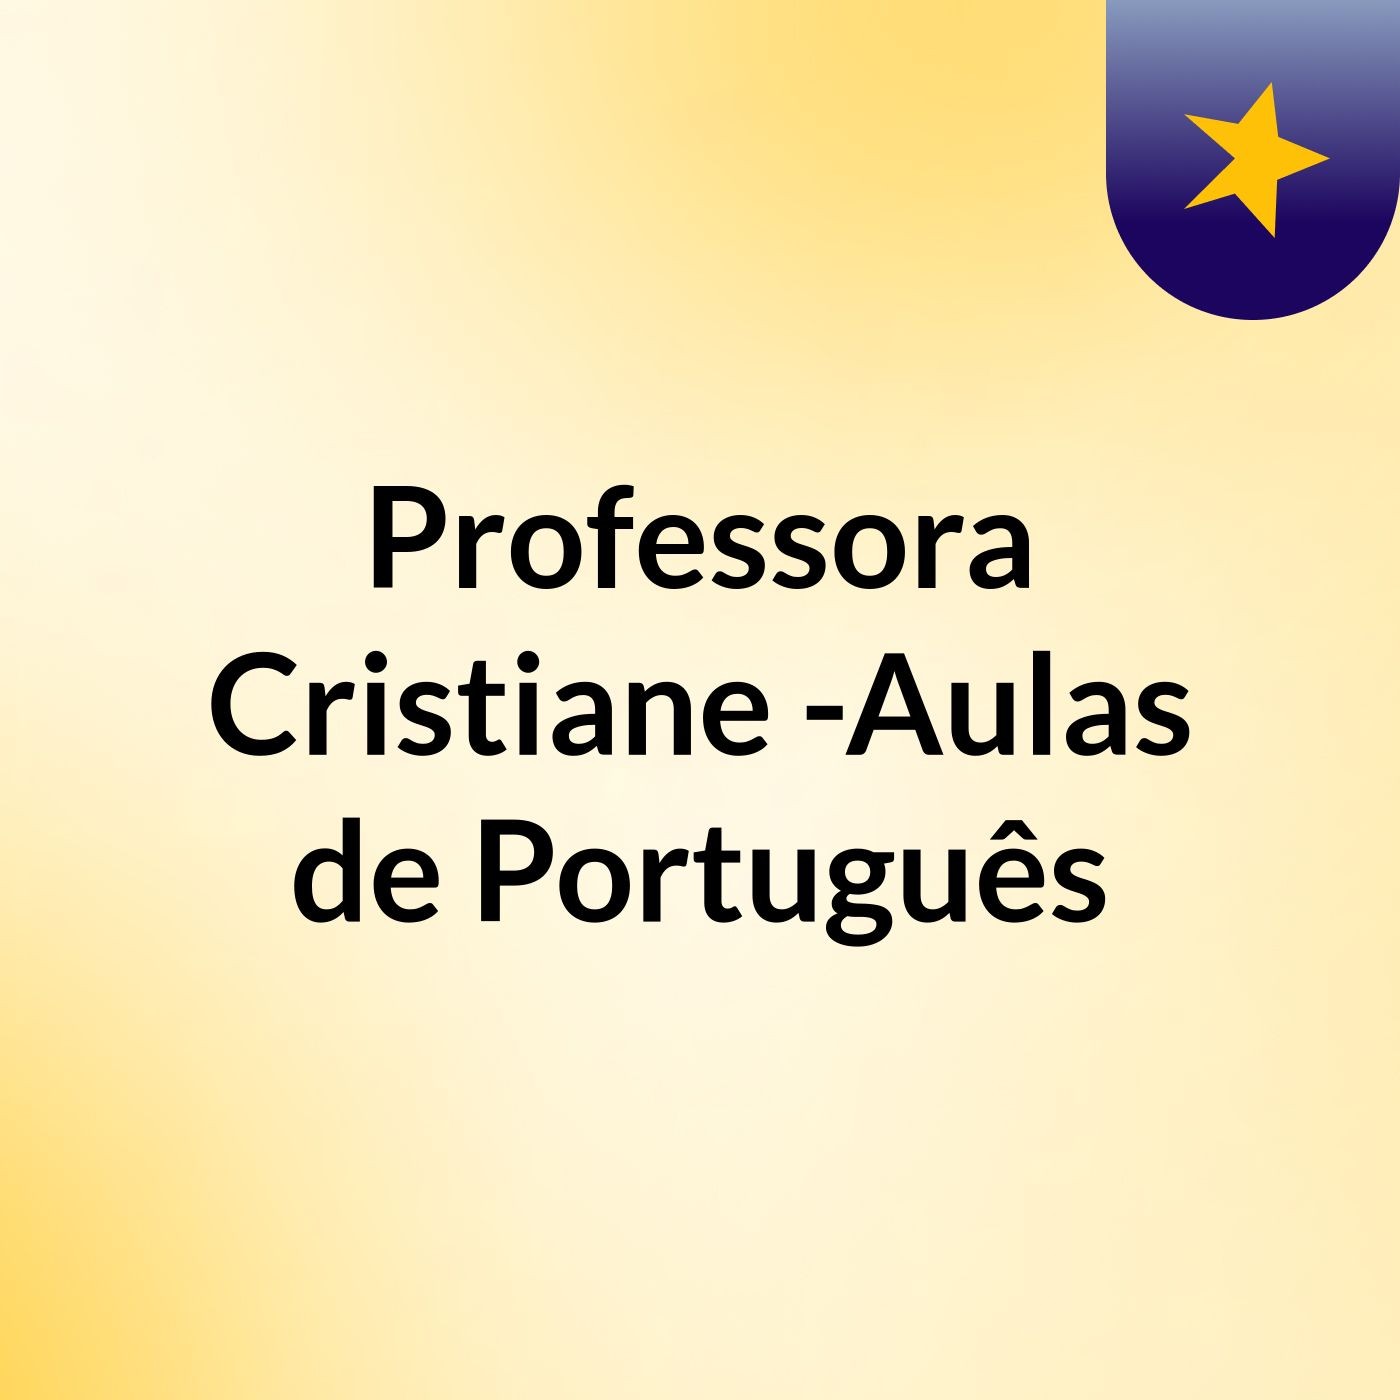 Episódio 5 - Professora Cristiane -Aulas de Português: Questão 03